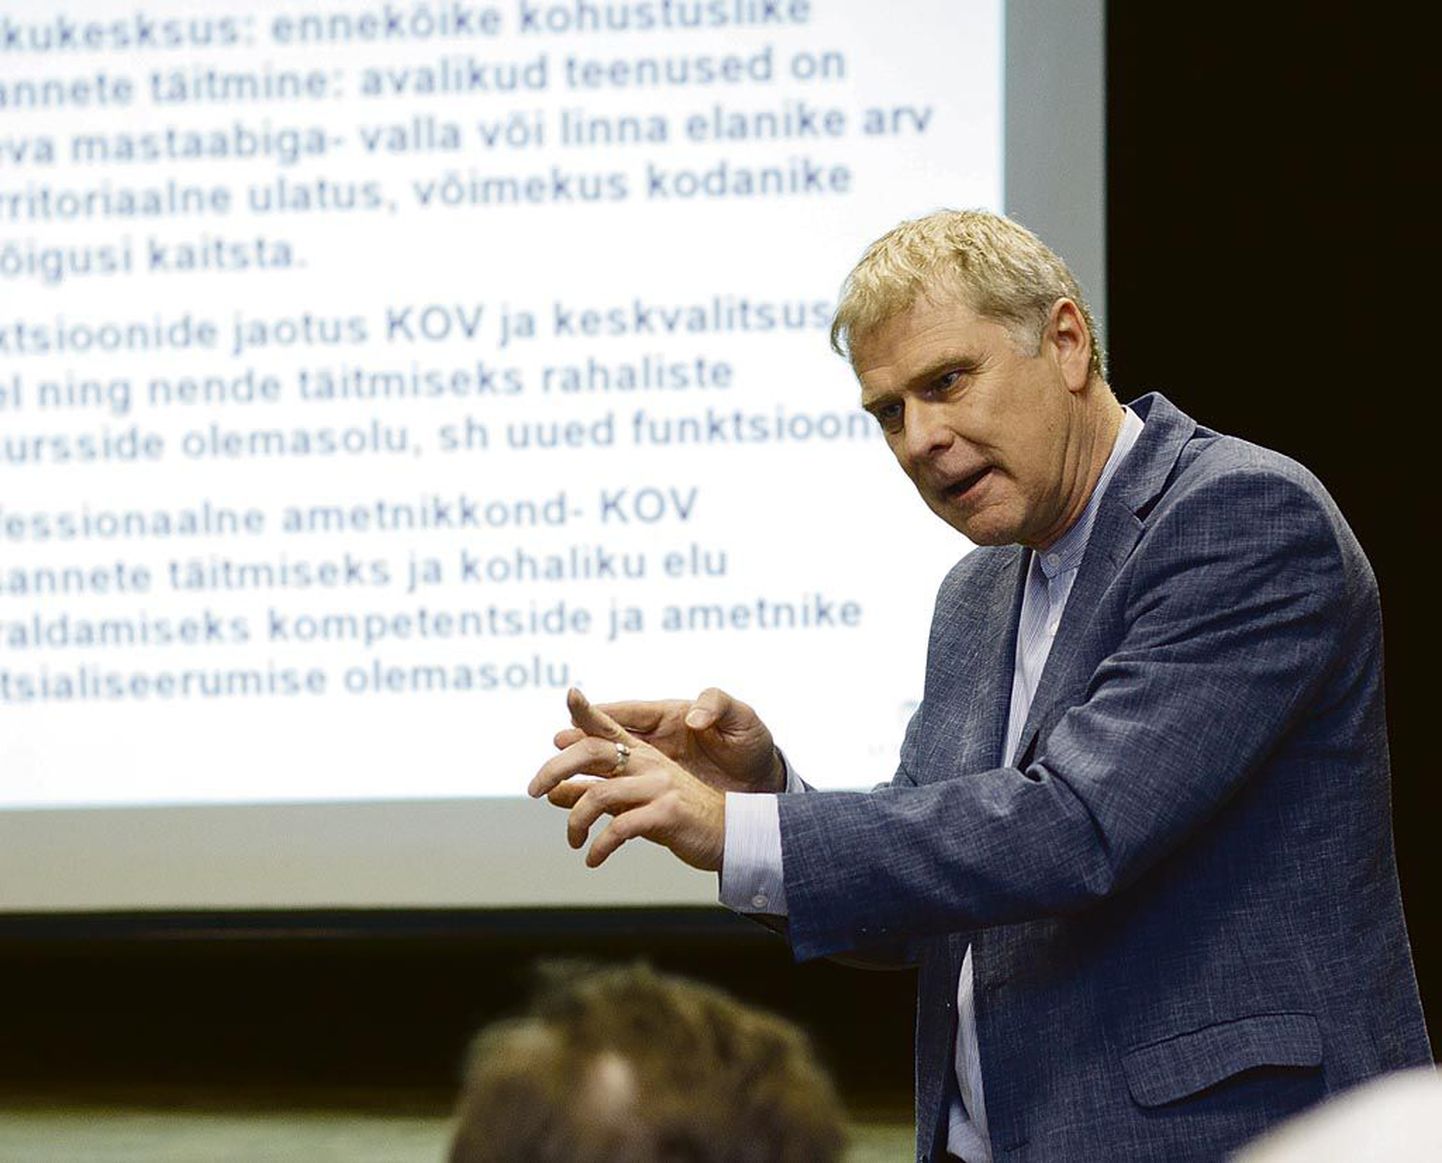 Rivo Noorkõivu õpetussõnu omavalitsuste uuendamiseks on ilmselt kuulnud kõikide Eesti linnade-valdade juhid. Tema hinnangul on reformi võtmekohaks just juhtimises uue taseme saavutamine.